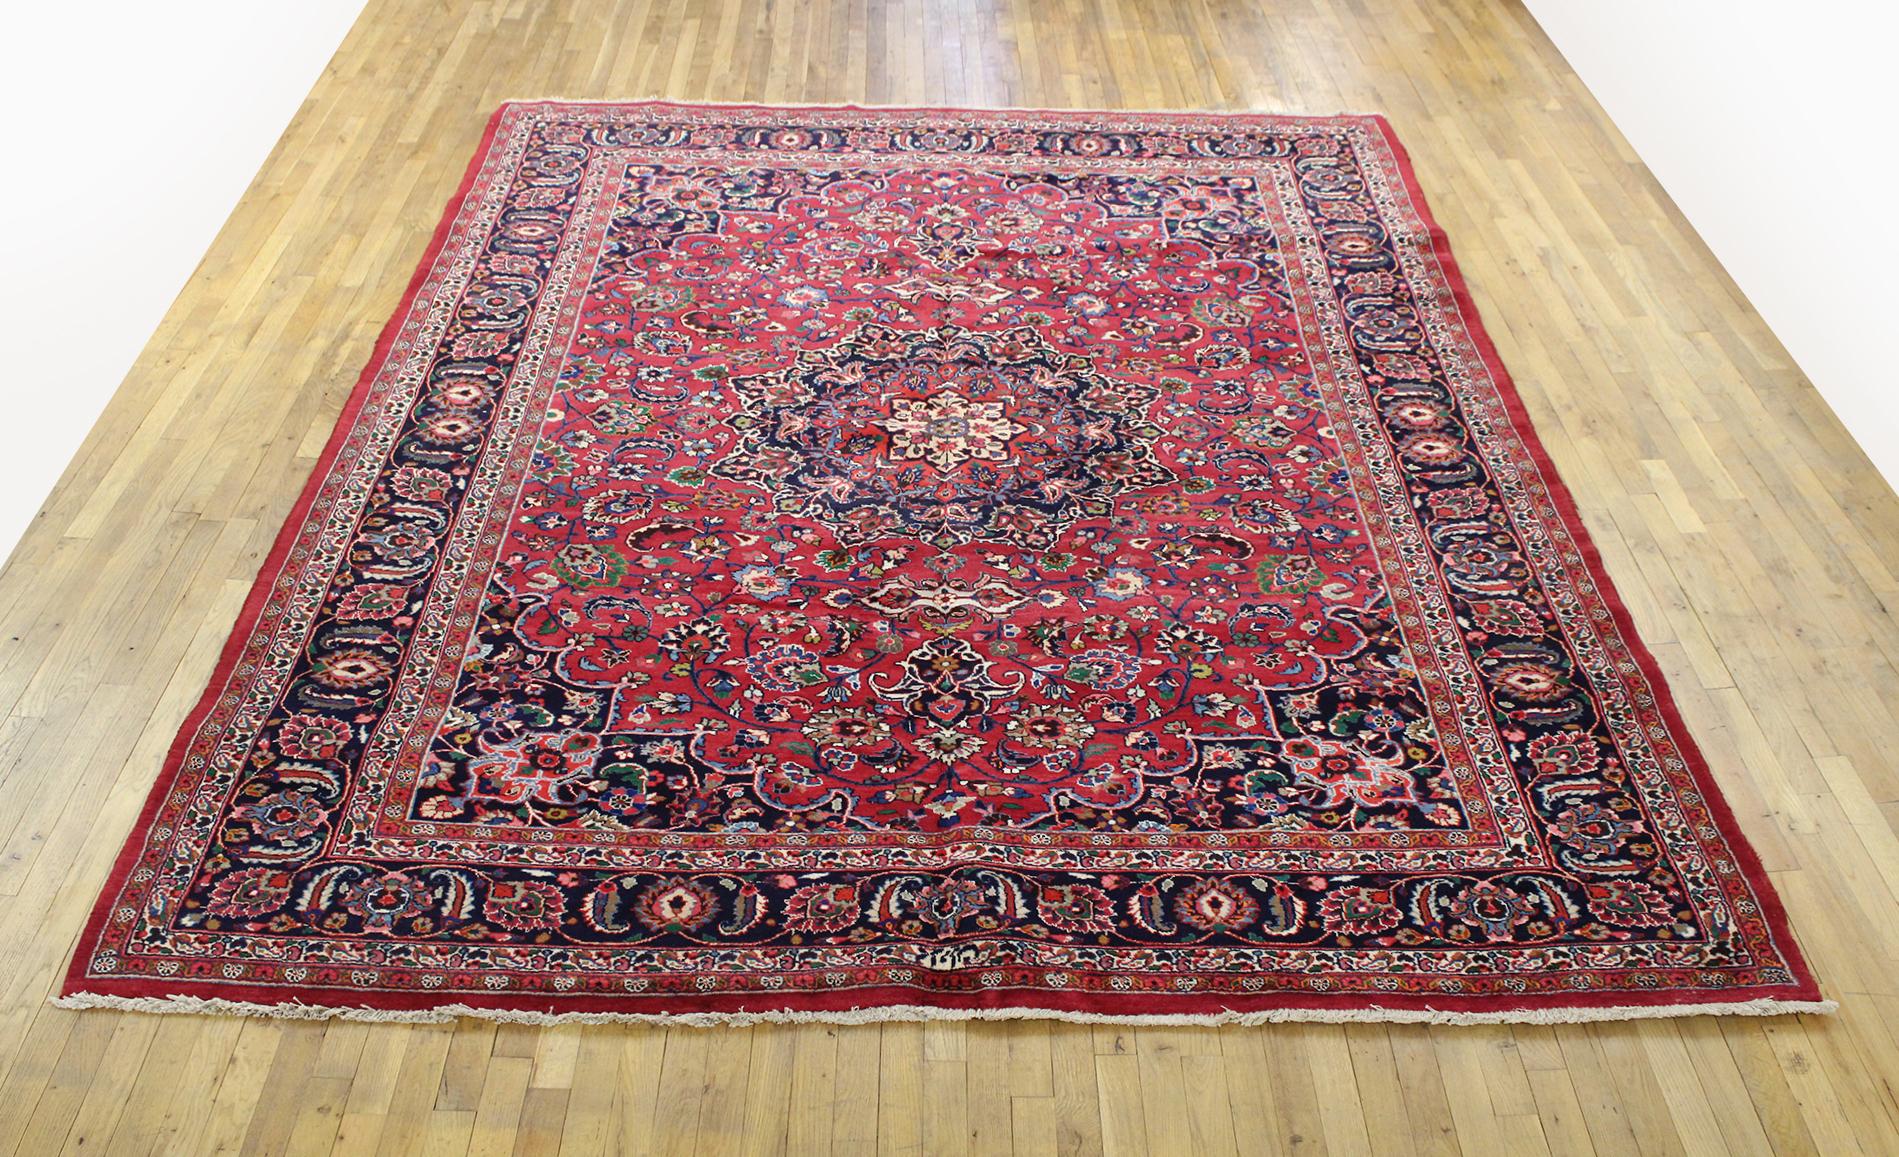 Vintage Persian Mesh Oriental Rug, Raumgröße

Ein Vintage Persian Mesh orientalischen Teppich, Größe 11'3